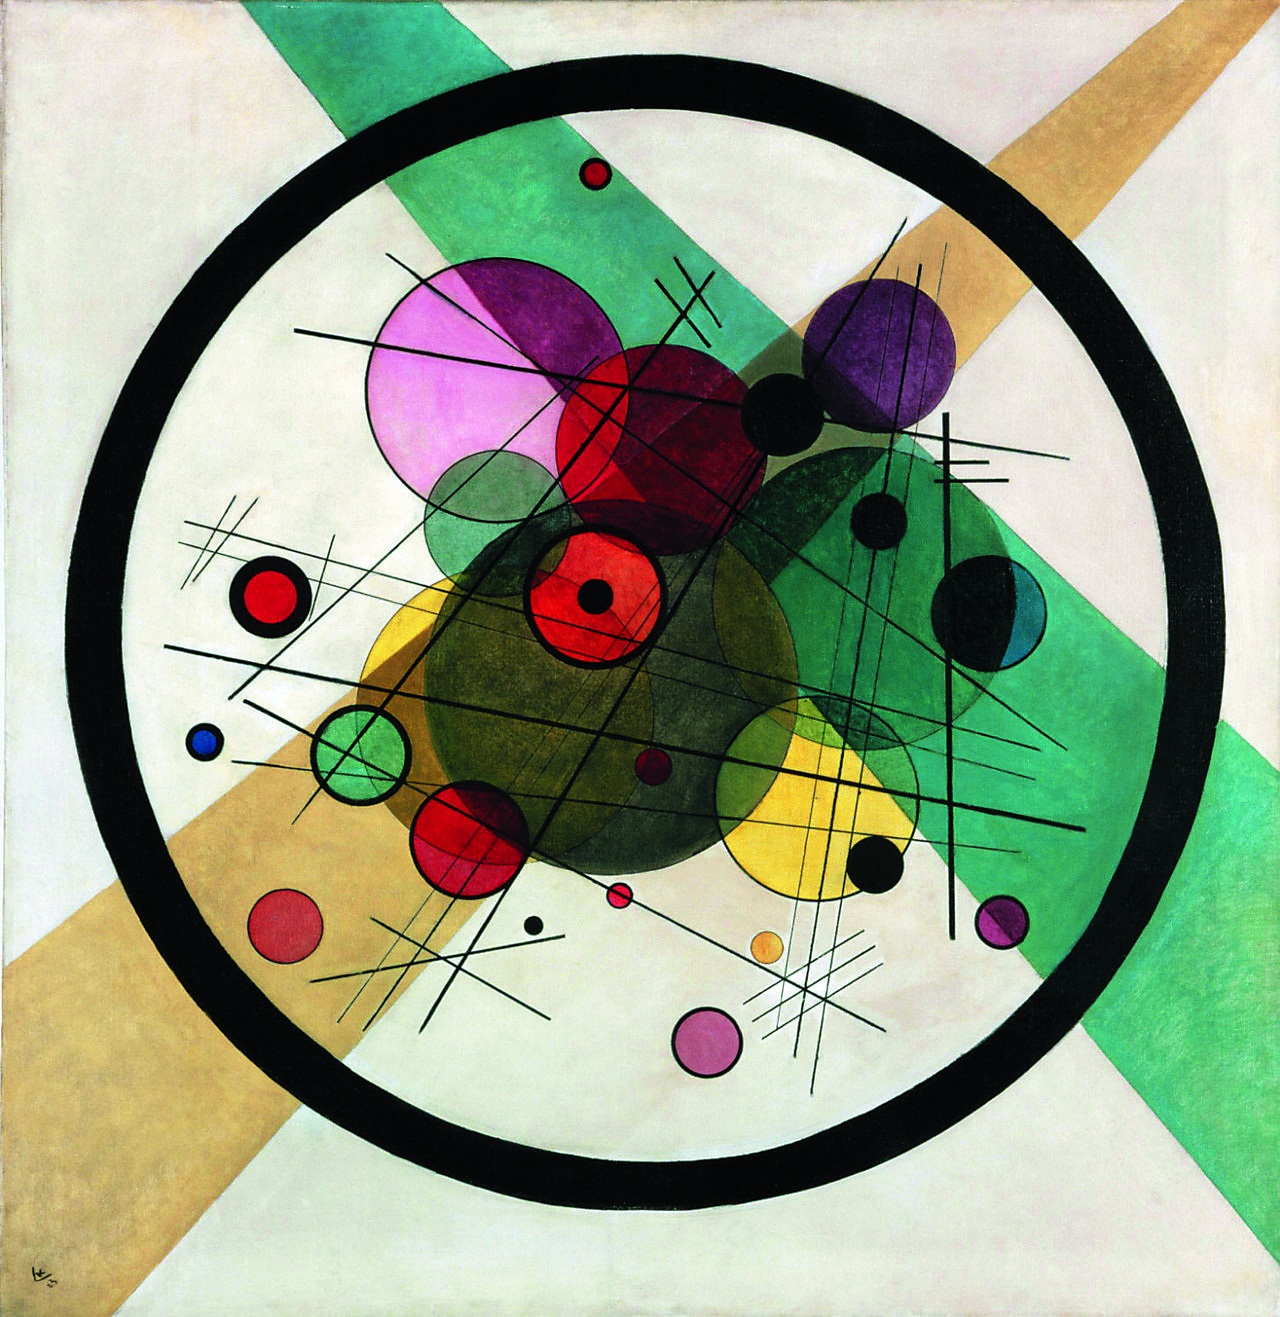 Fotografia: uma pintura em uma tela. Uma circunferência preta com vários círculos e retas coloridos dentro.